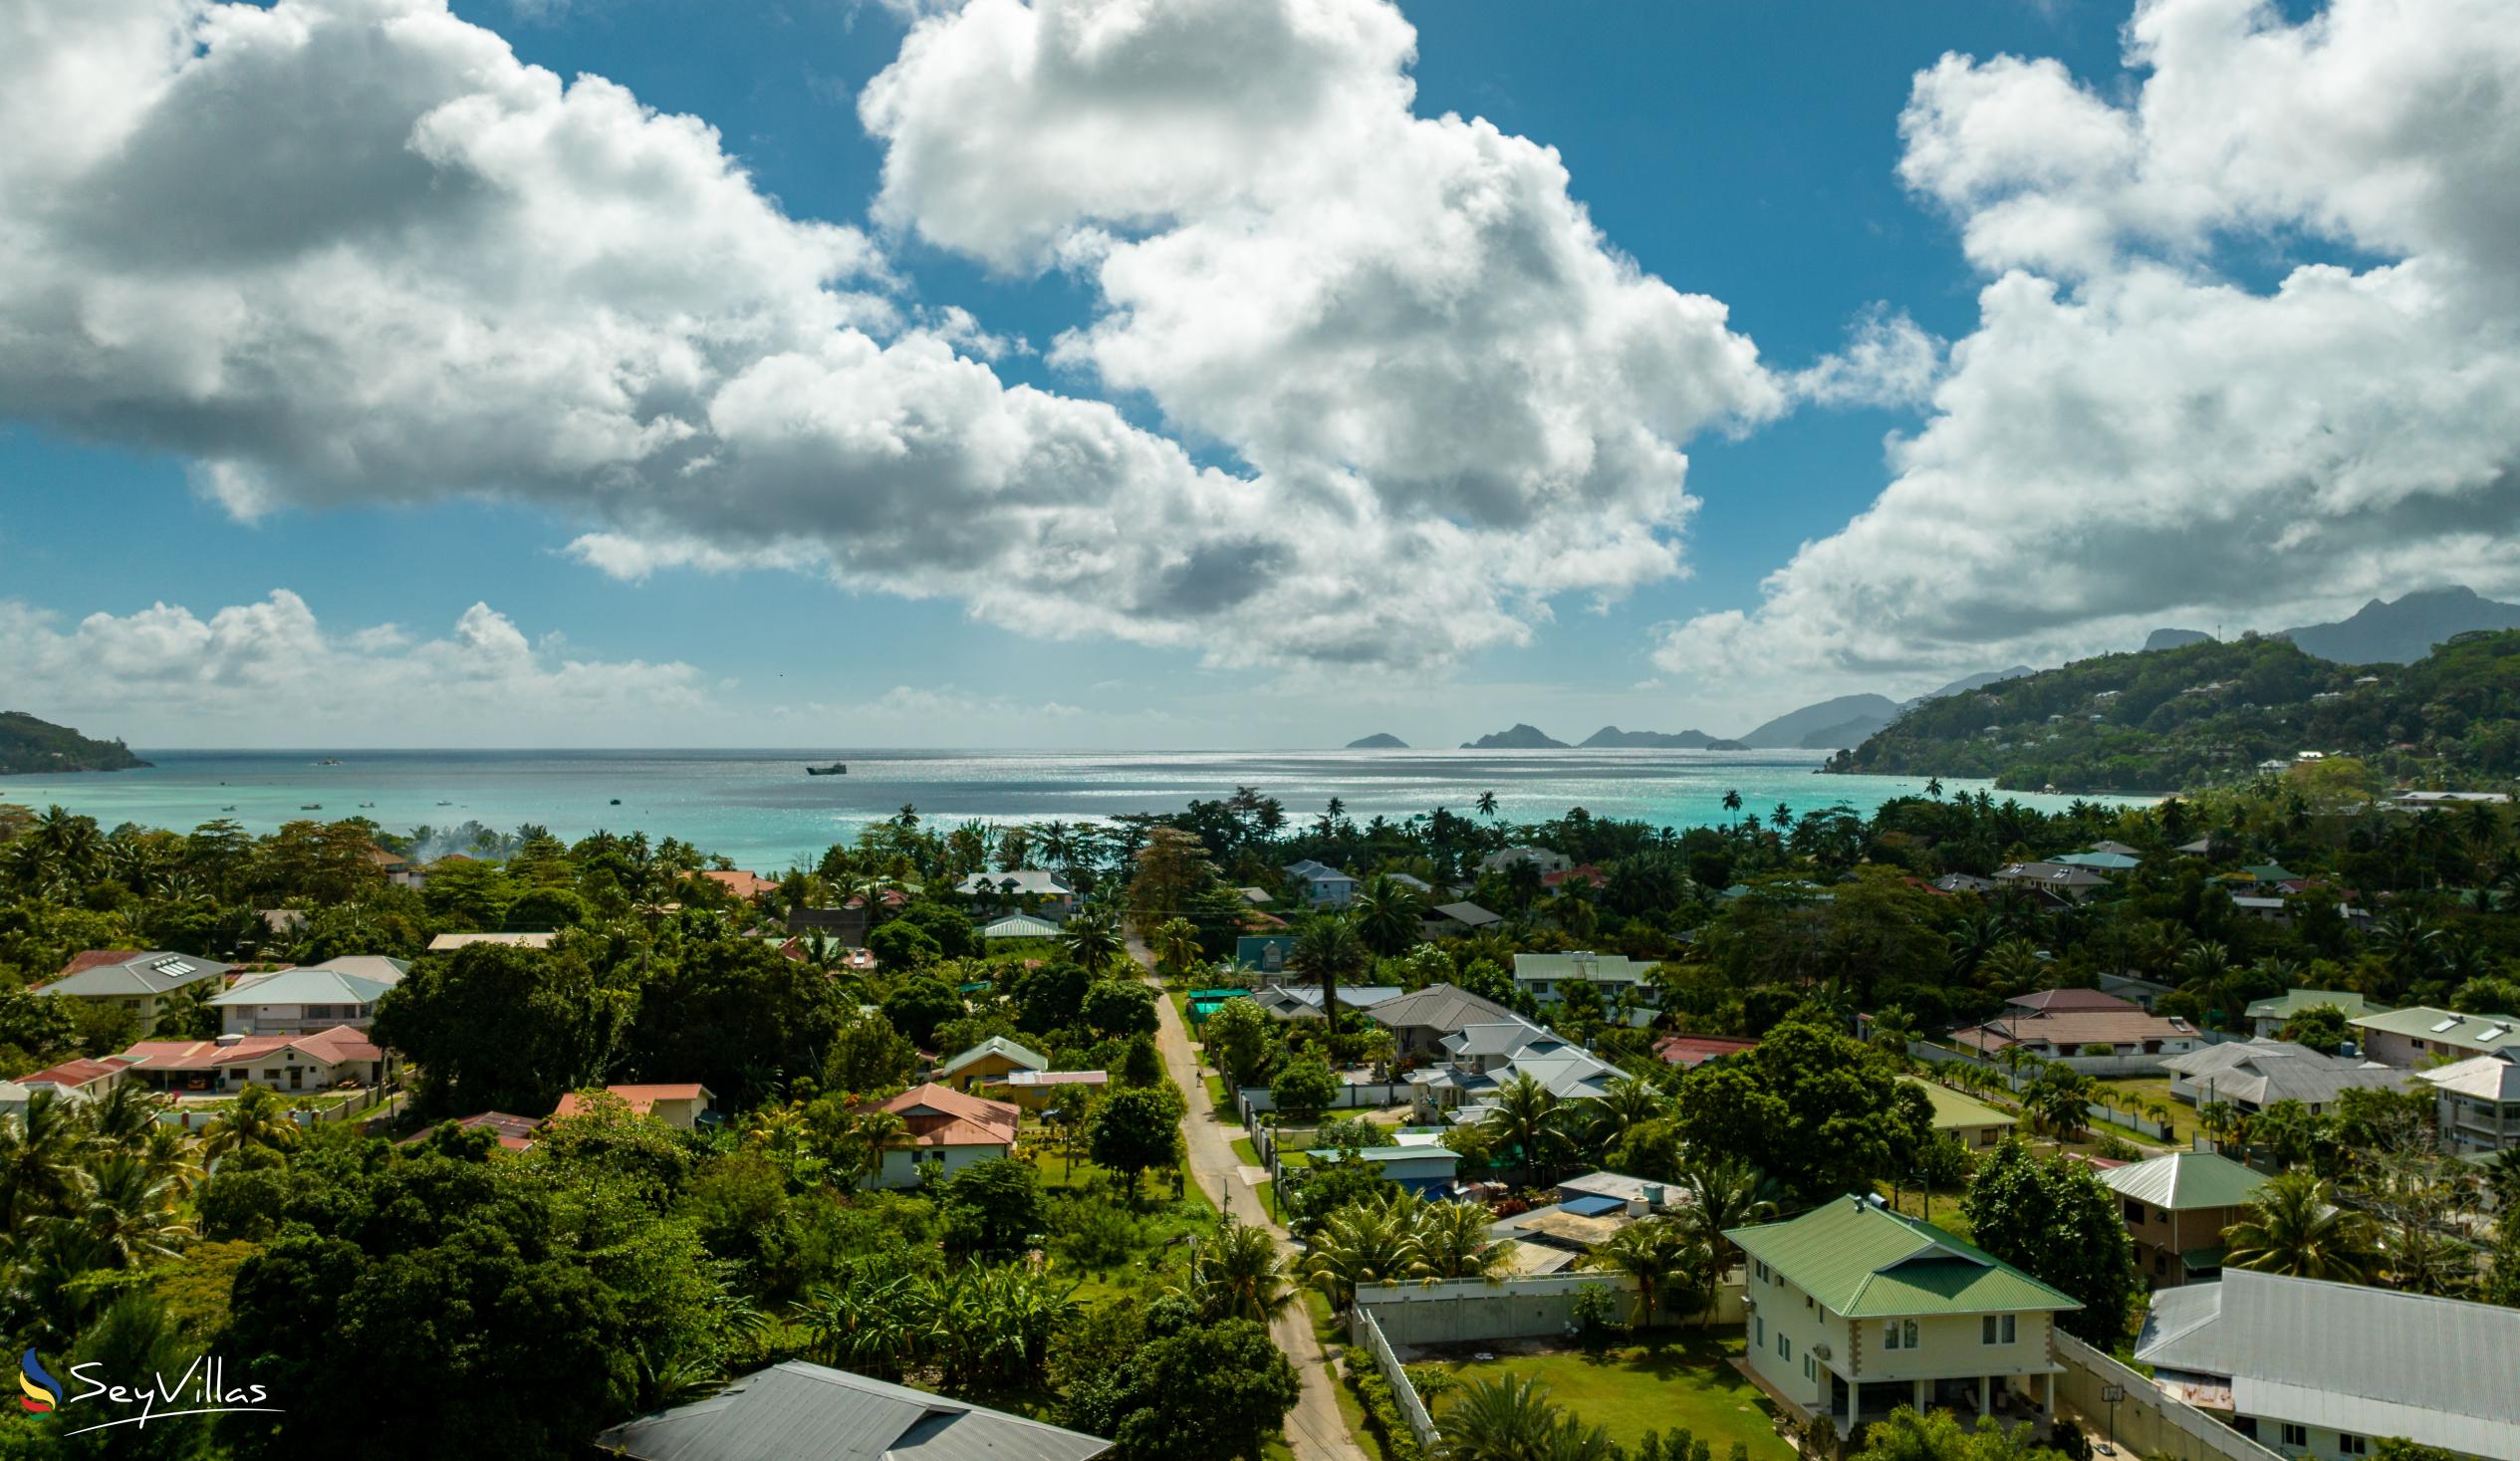 Foto 24: Alha Villa - Posizione - Mahé (Seychelles)